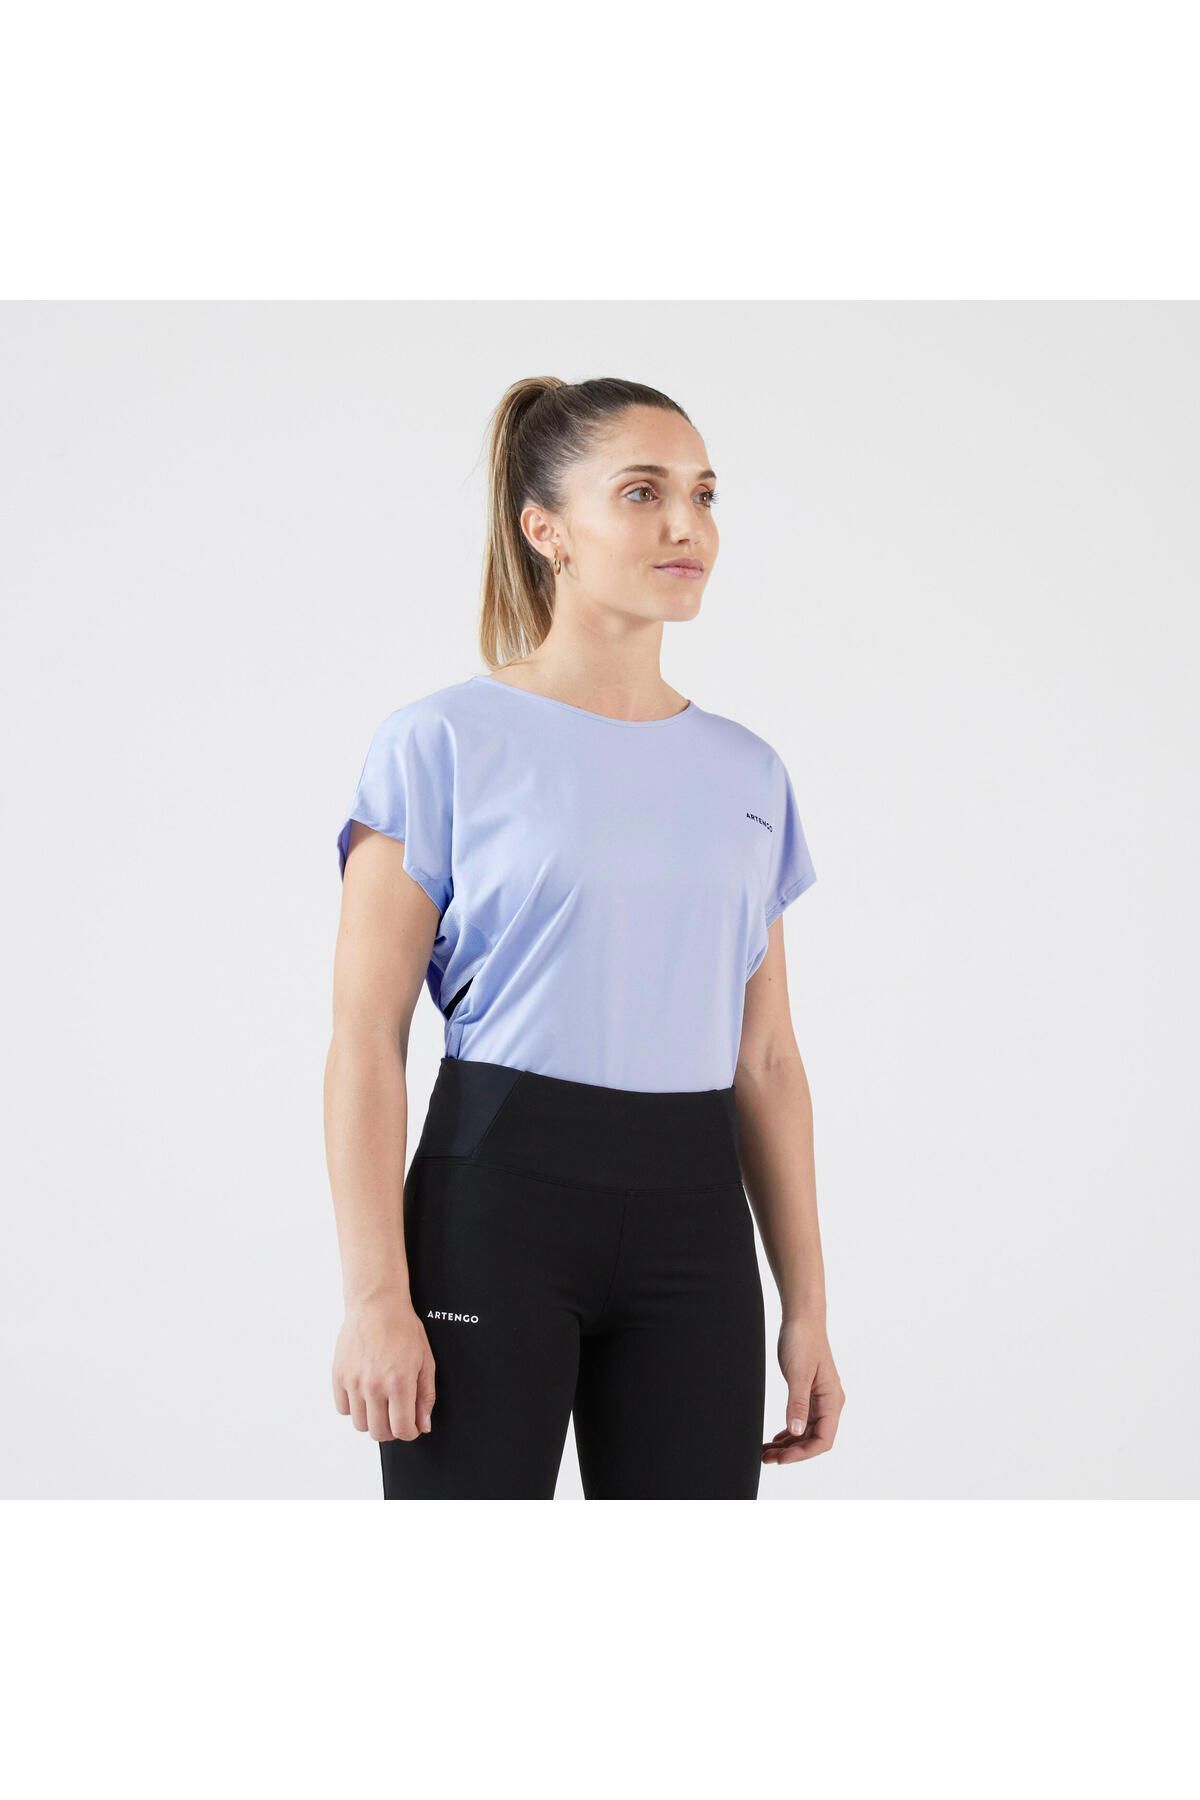 Decathlon Kadın Tenis Tişörtü - Mavi - Dry 500